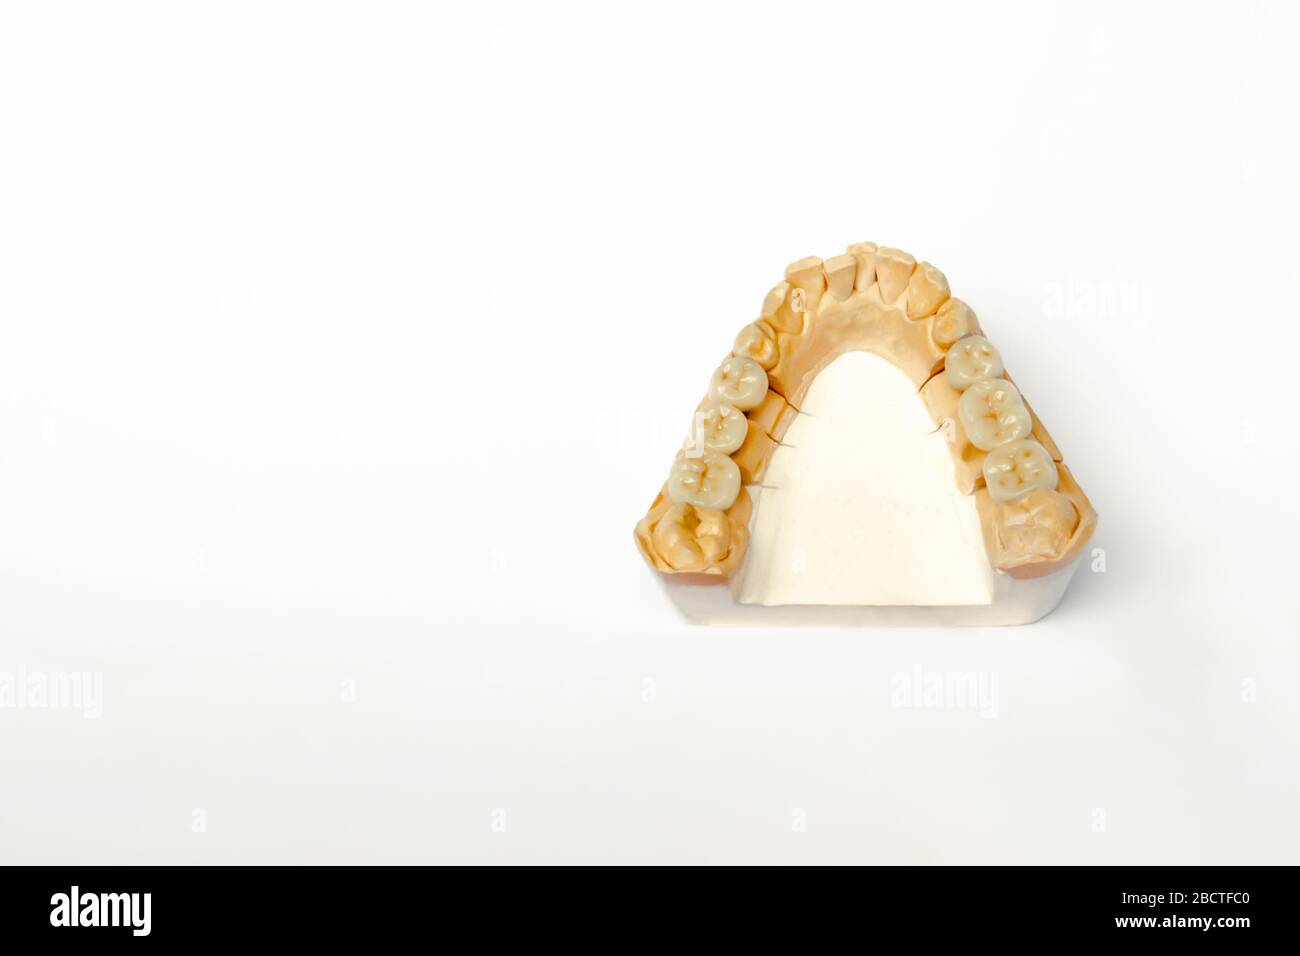 Gipsmodell der Zähne des Unterkiefers mit keramischen Zähnen. Falsche Zähne Molaren und Prämolaren. Weißer Hintergrund Stockfoto